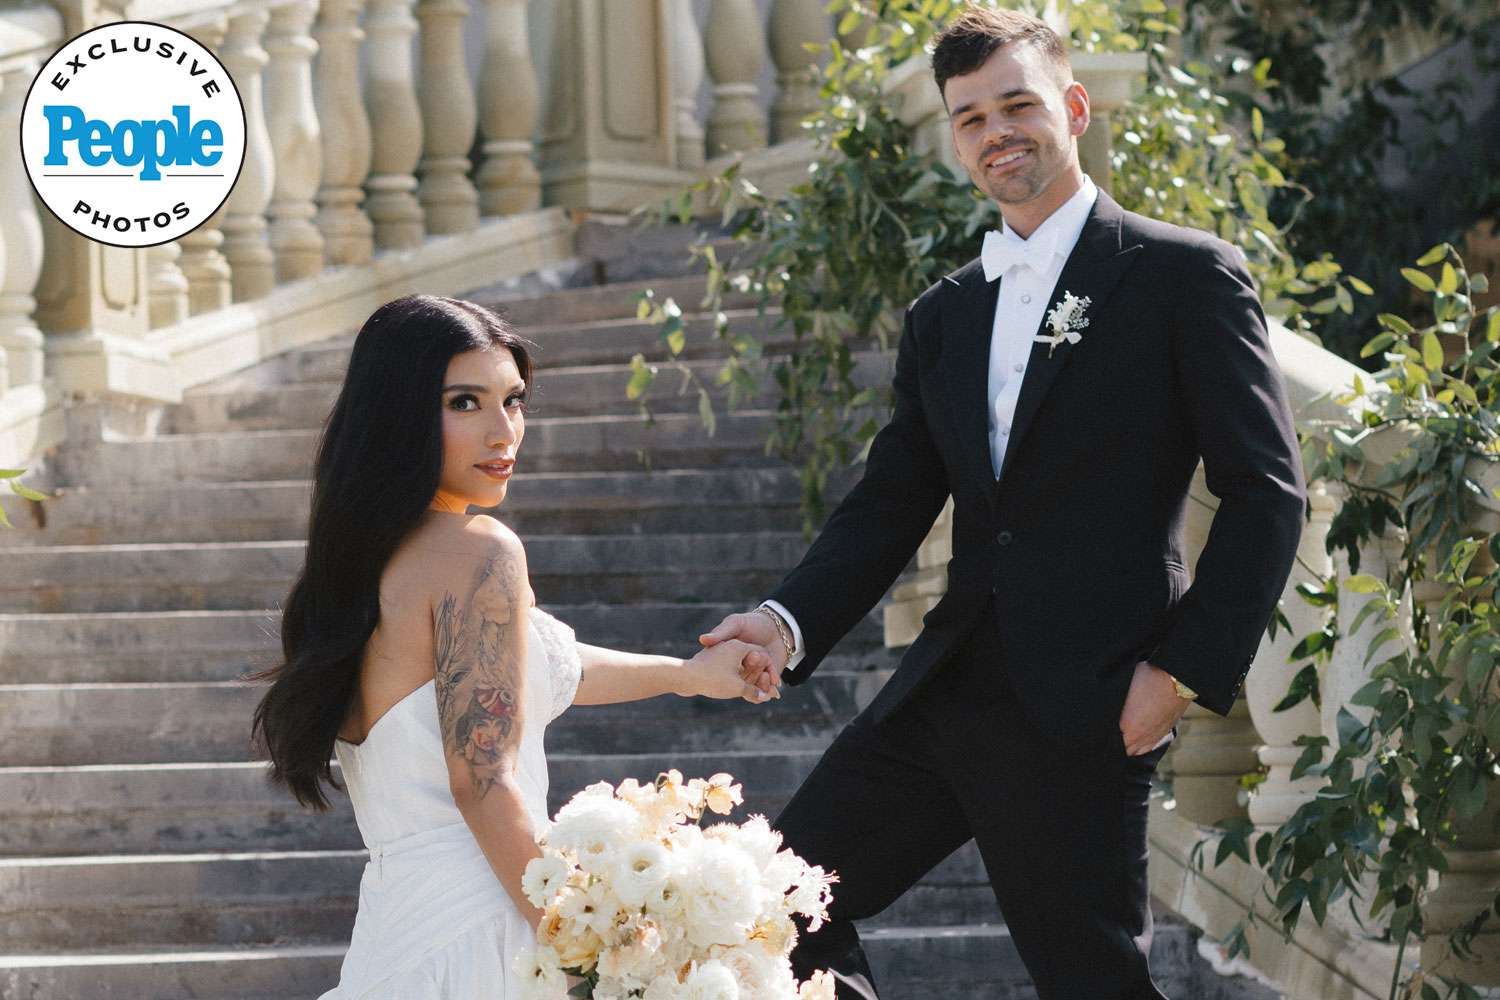 Pentatonix Singer Kirstin Maldonado Marries Ben Hausdorff in Texas Wedding Ceremony: 'This Is It' (Exclusive)